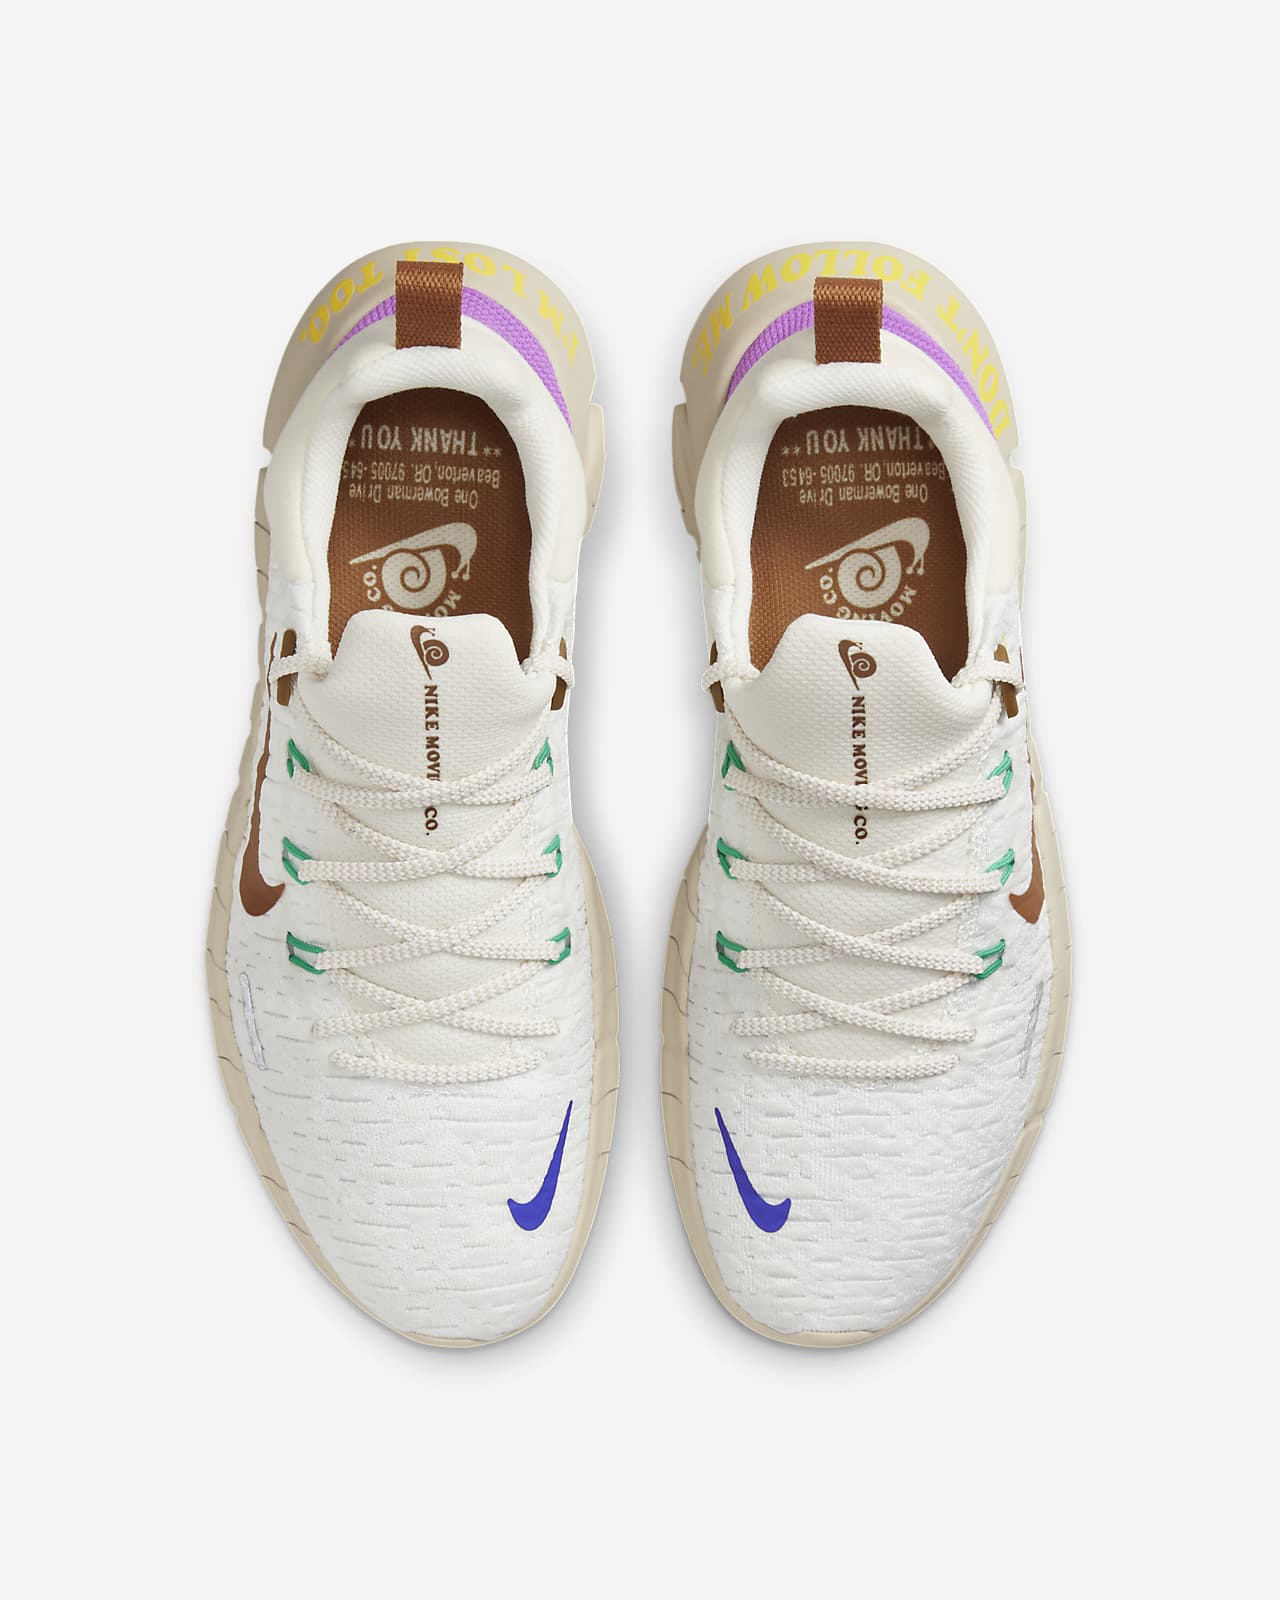 5.0 Premium Men's Road Running Shoes. Nike JP